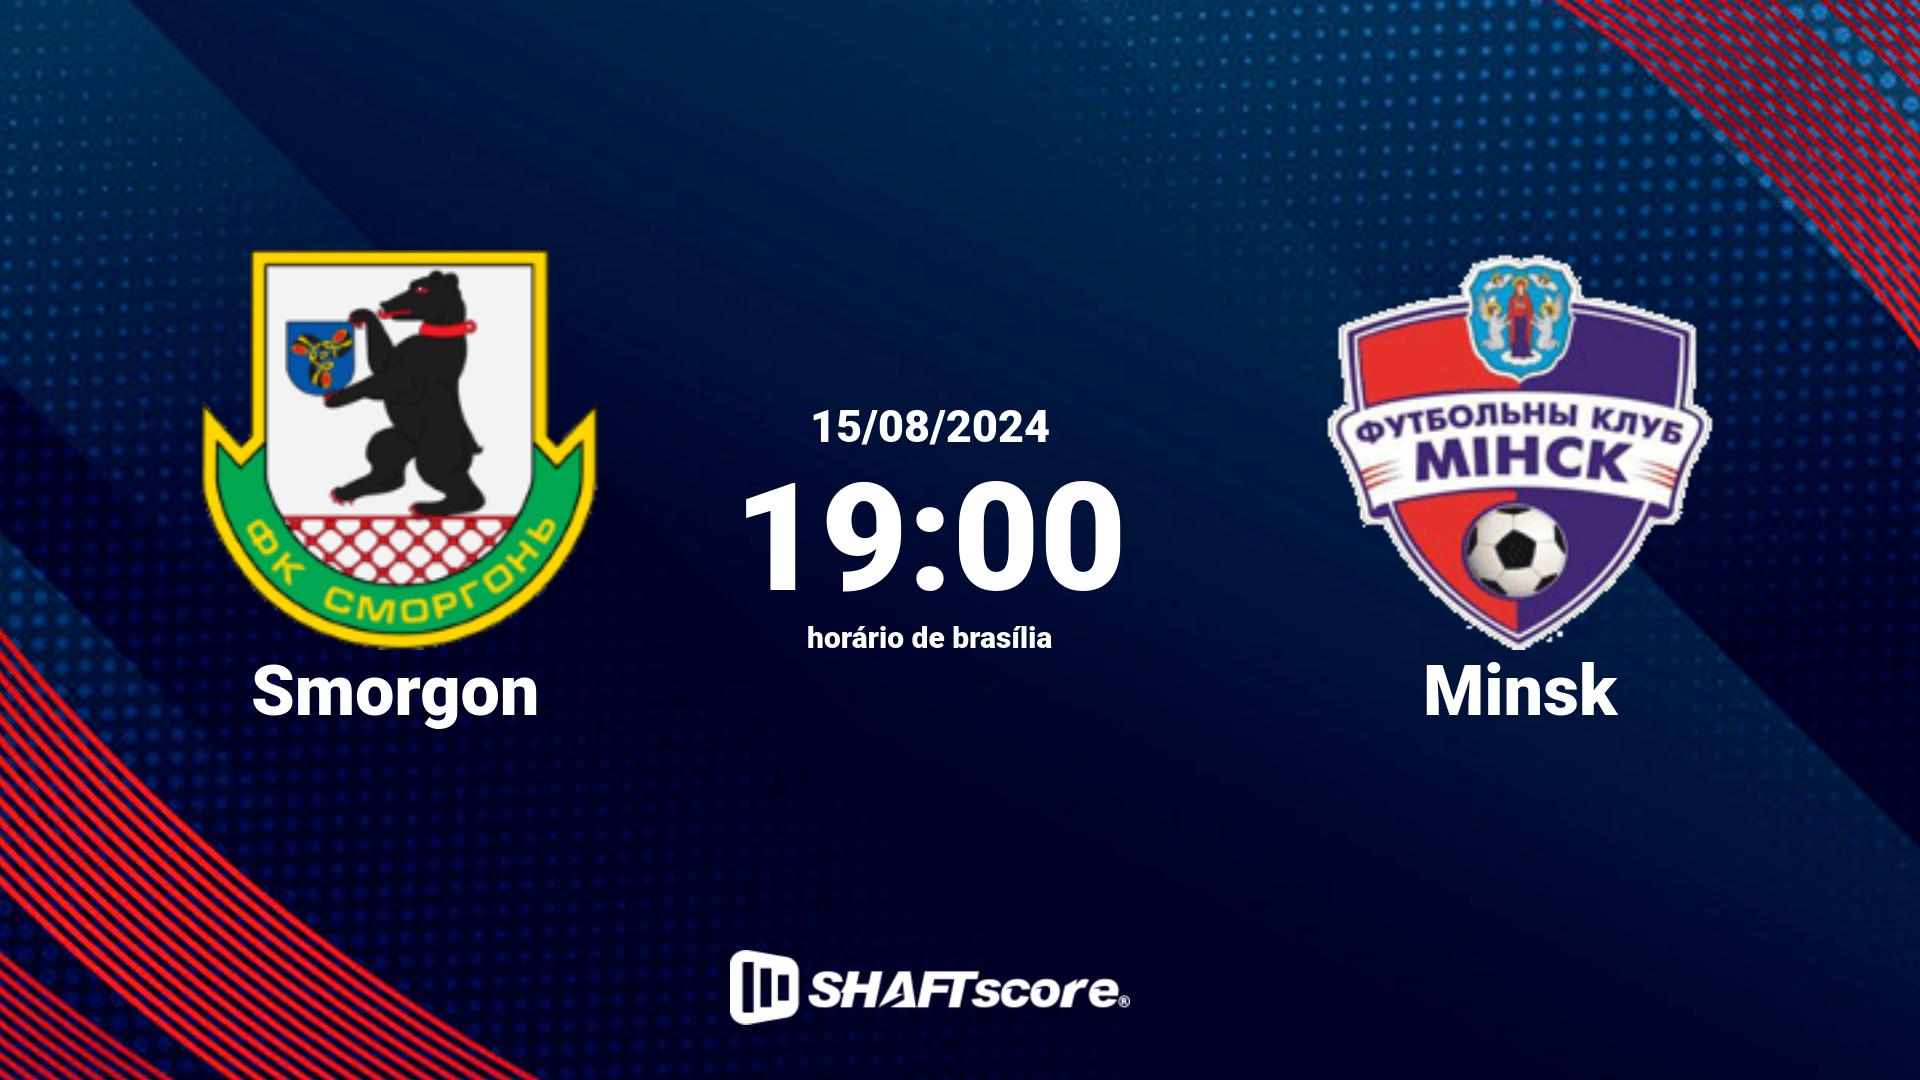 Estatísticas do jogo Smorgon vs Minsk 15.08 19:00